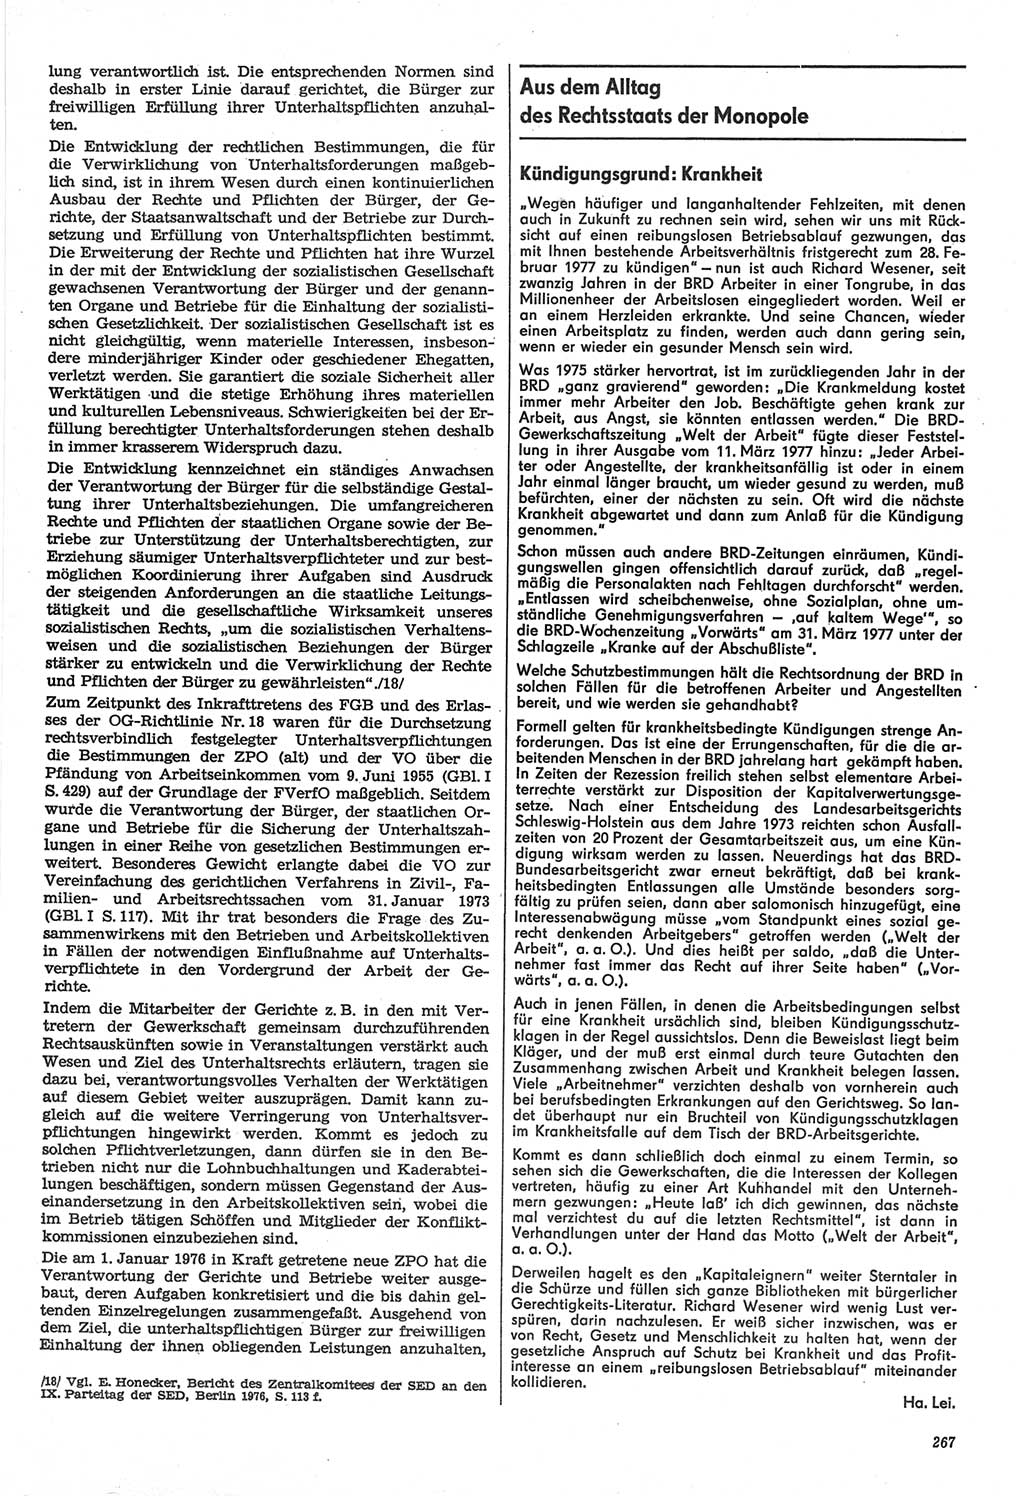 Neue Justiz (NJ), Zeitschrift für Recht und Rechtswissenschaft-Zeitschrift, sozialistisches Recht und Gesetzlichkeit, 31. Jahrgang 1977, Seite 267 (NJ DDR 1977, S. 267)